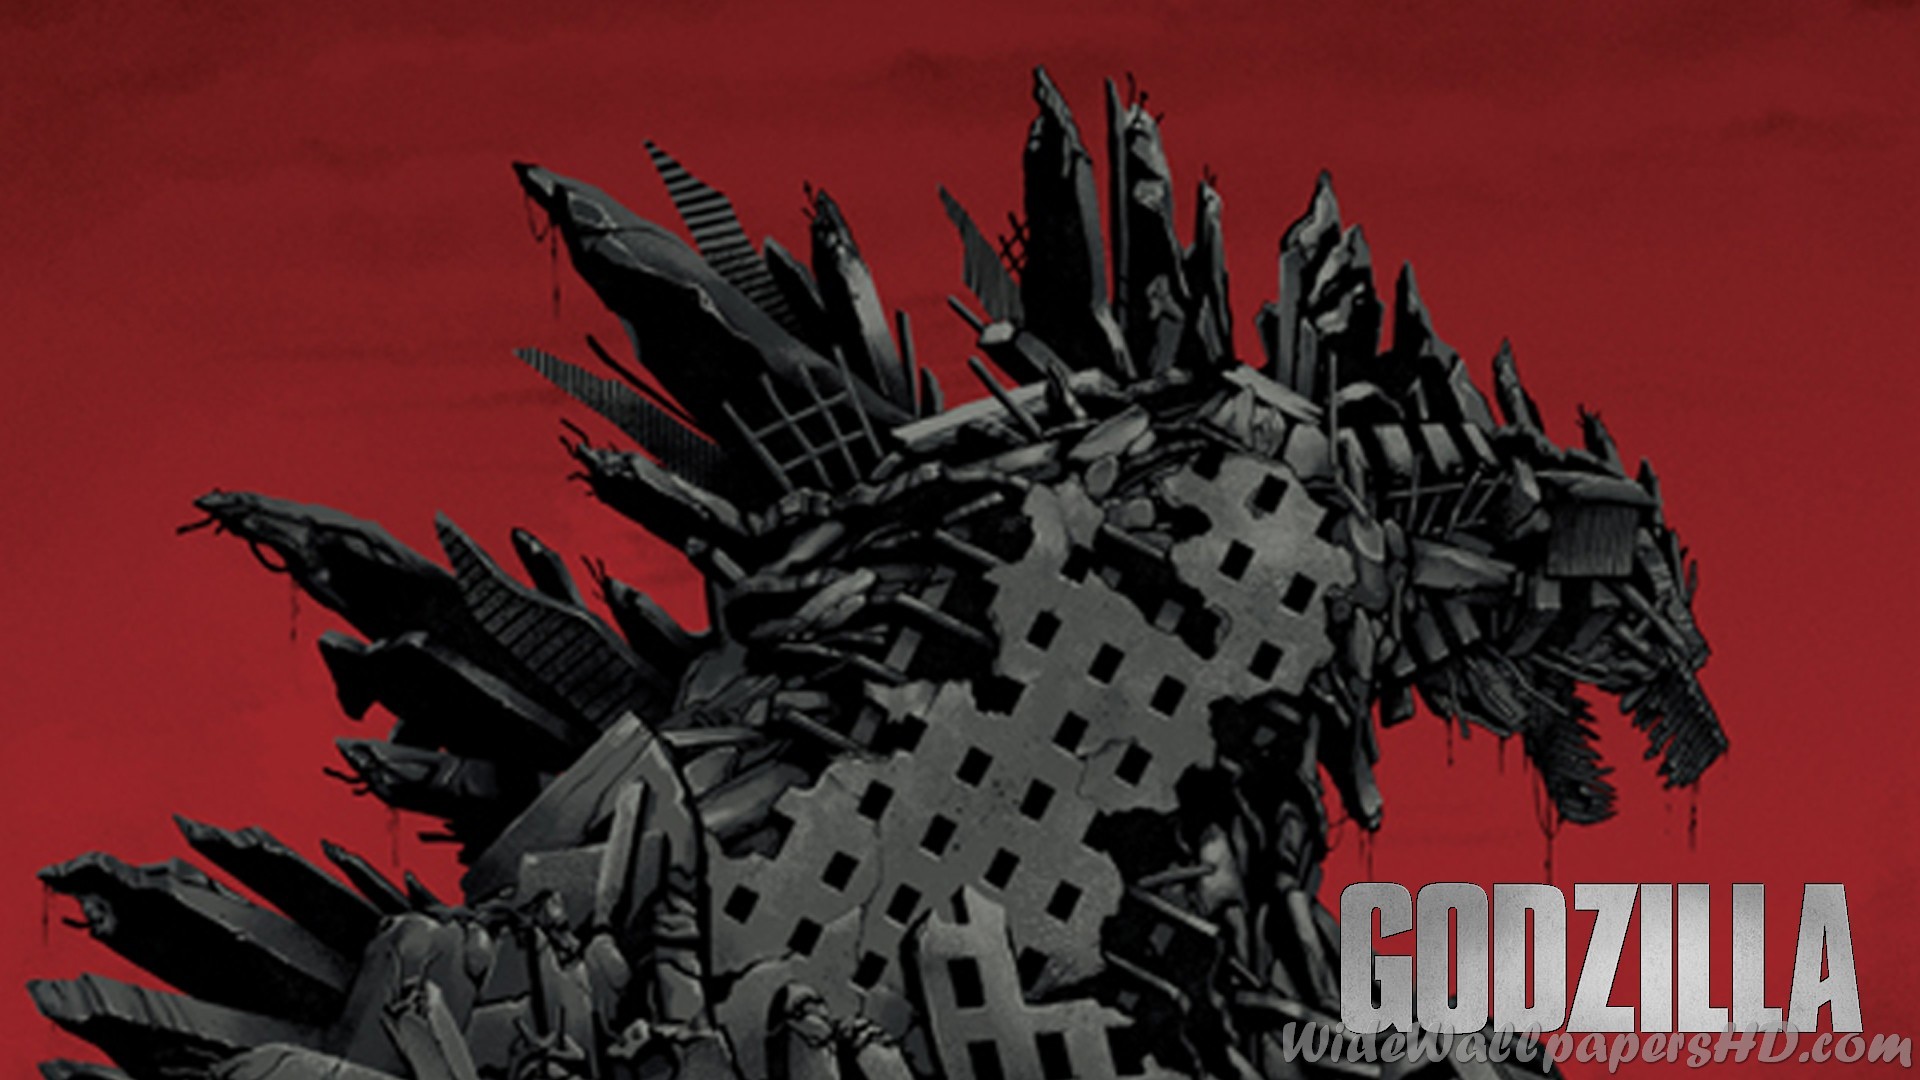 1920x1080 Godzilla 2014 wallpaper - 1152031